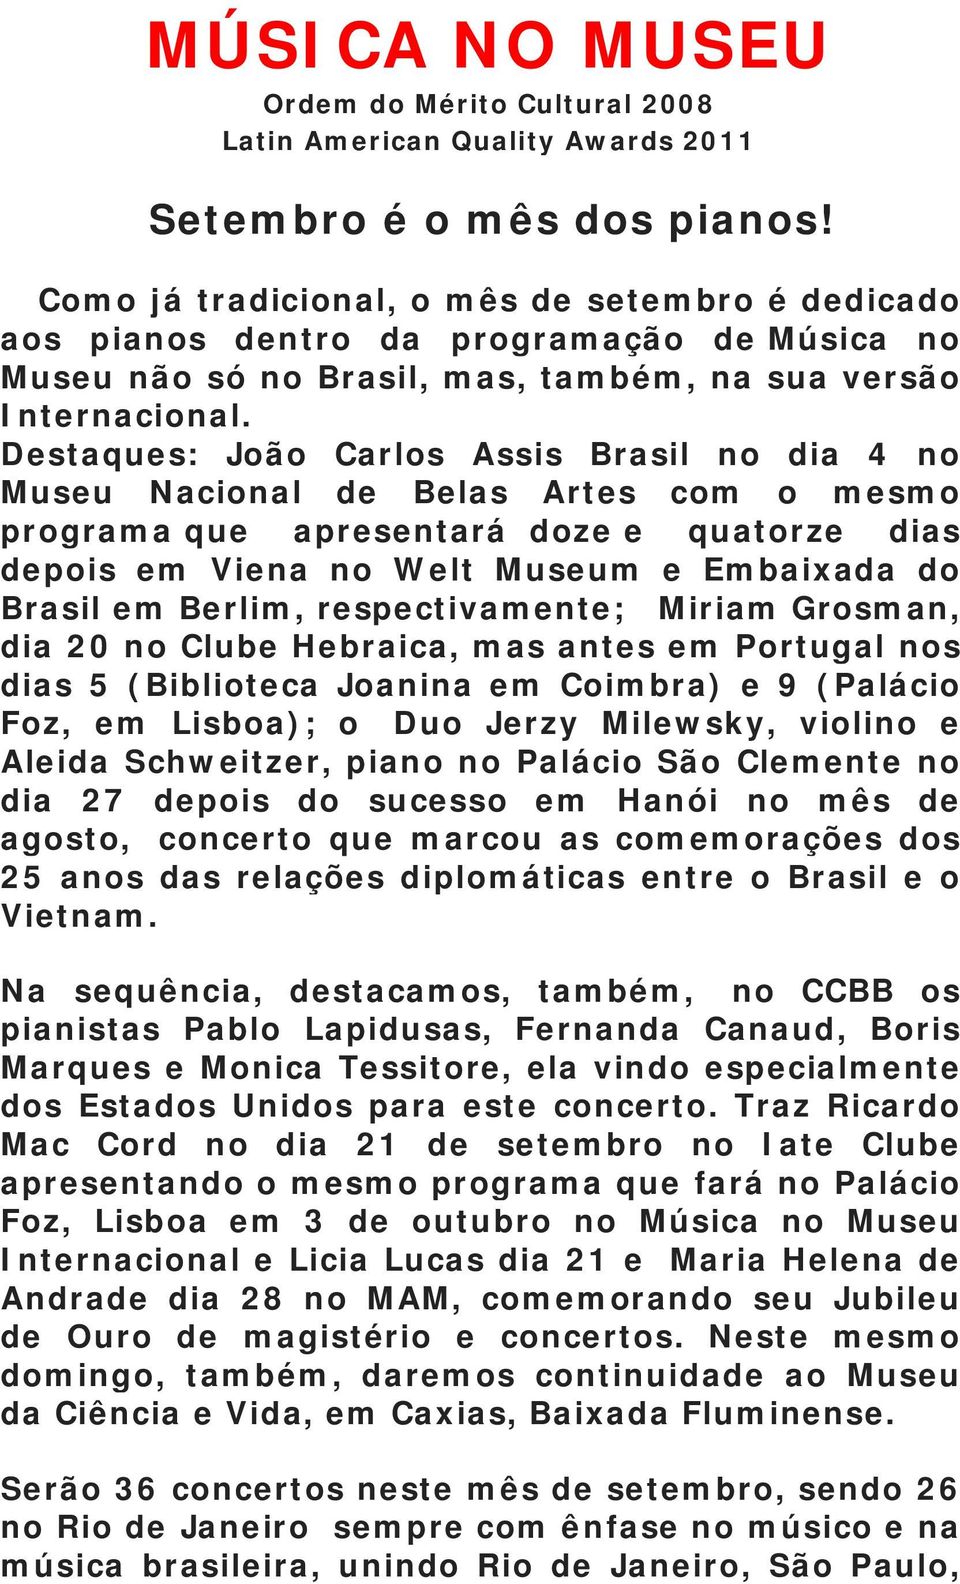 Destaques: João Carlos Assis Brasil no dia 4 no Museu Nacional de Belas Artes com o mesmo programa que apresentará doze e quatorze dias depois em Viena no Welt Museum e Embaixada do Brasil em Berlim,